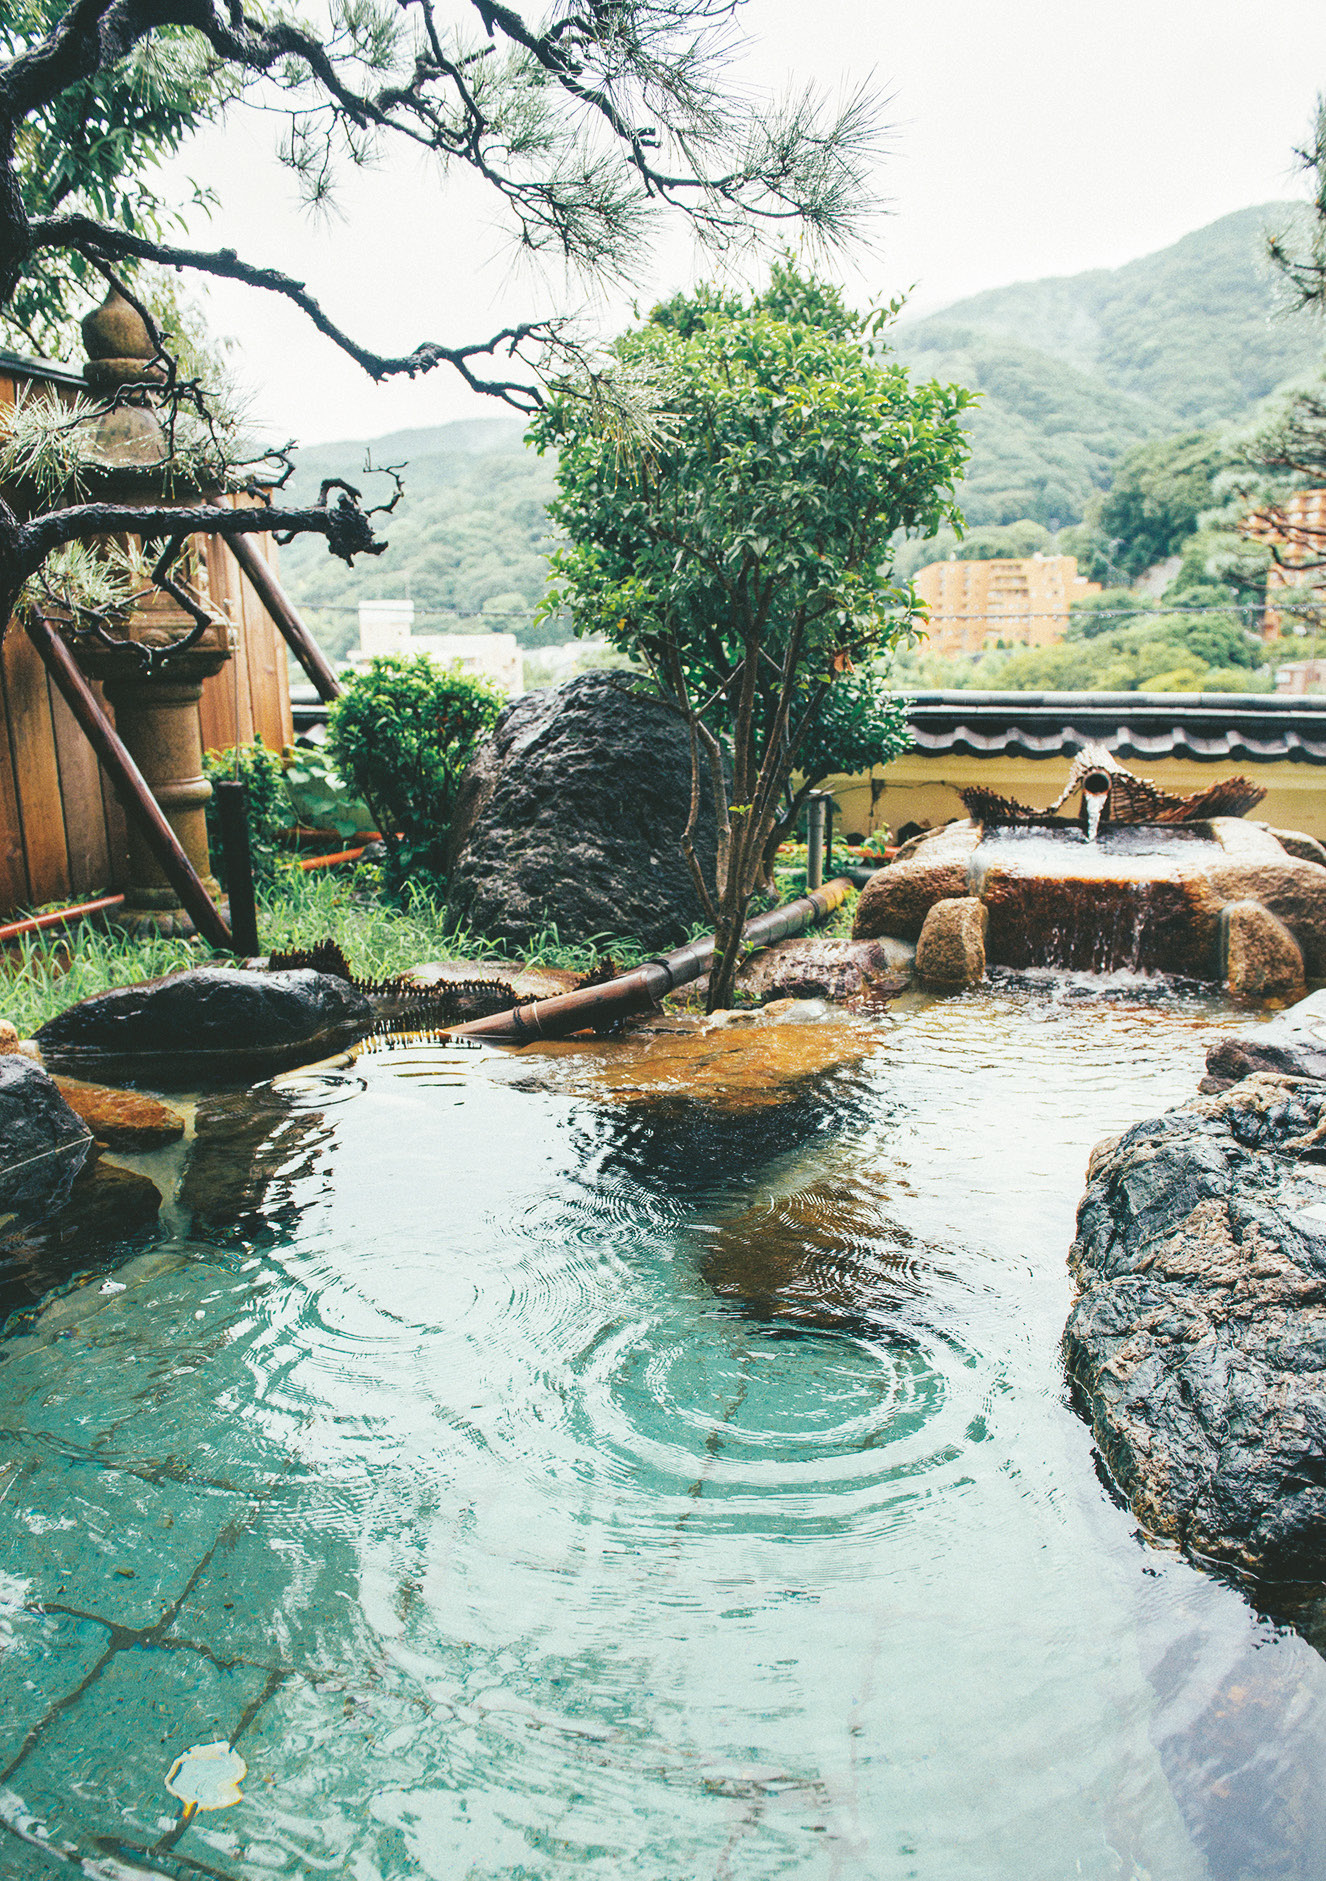 日本庭園の趣向を取り入れた露天風呂。檜風呂の内湯とともに宿の看板浴場。